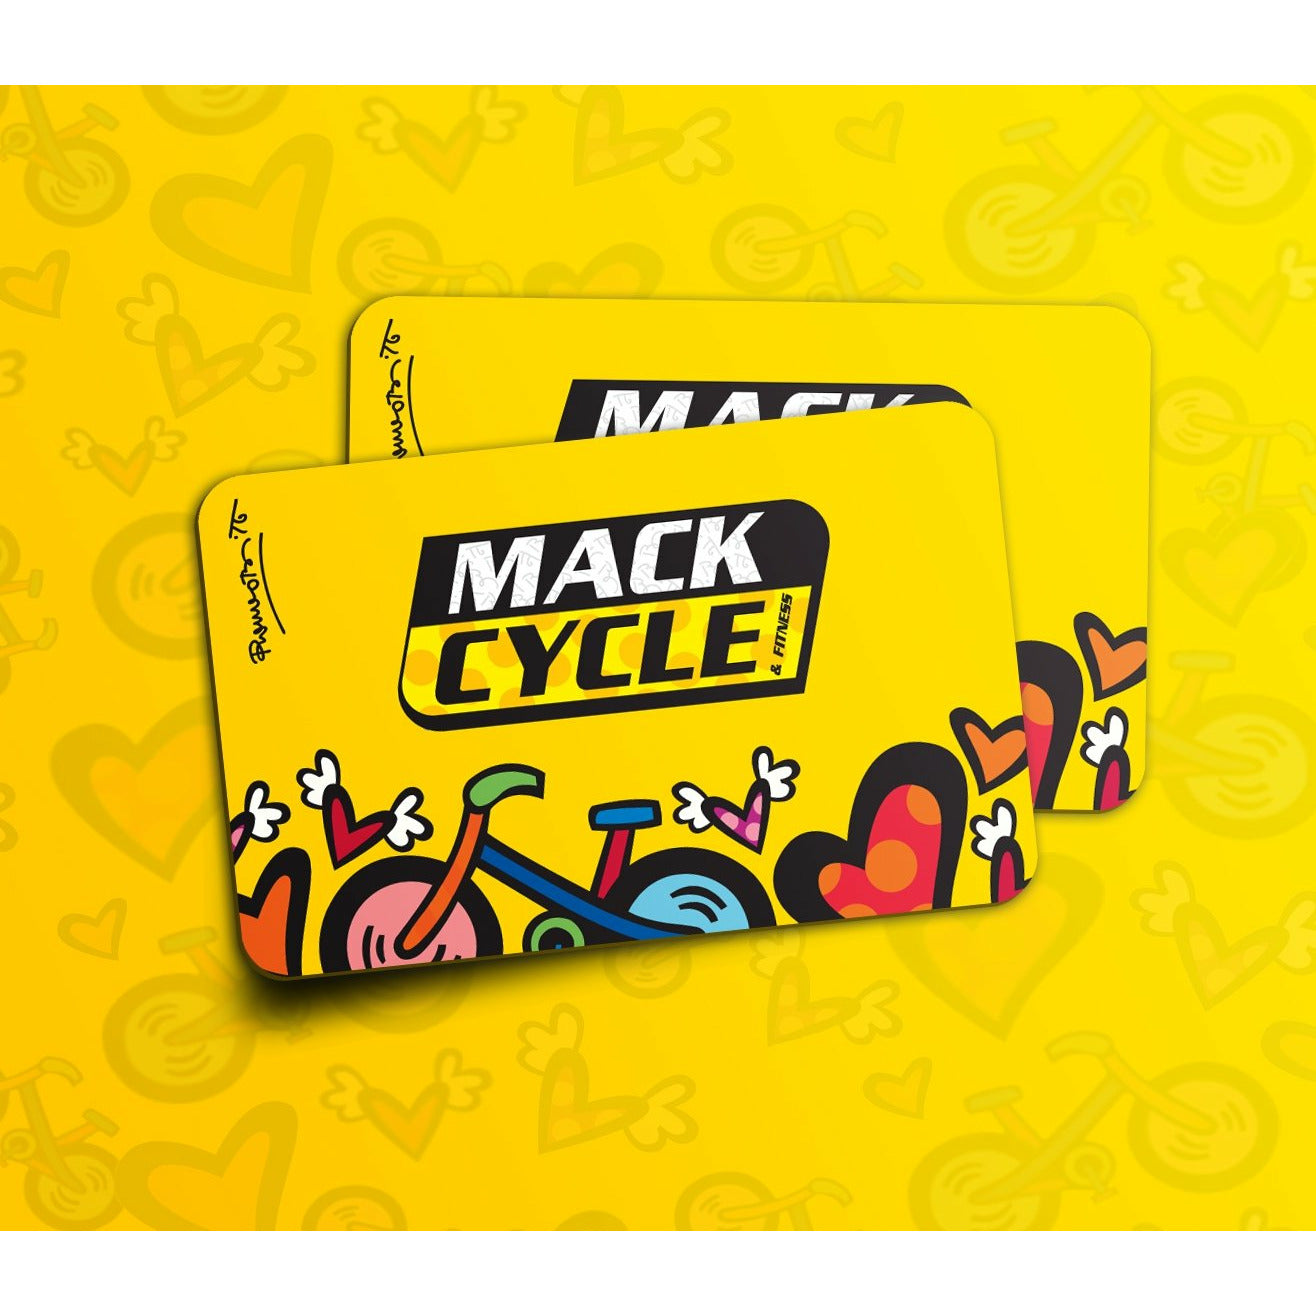 Mack Cycle Gift Card